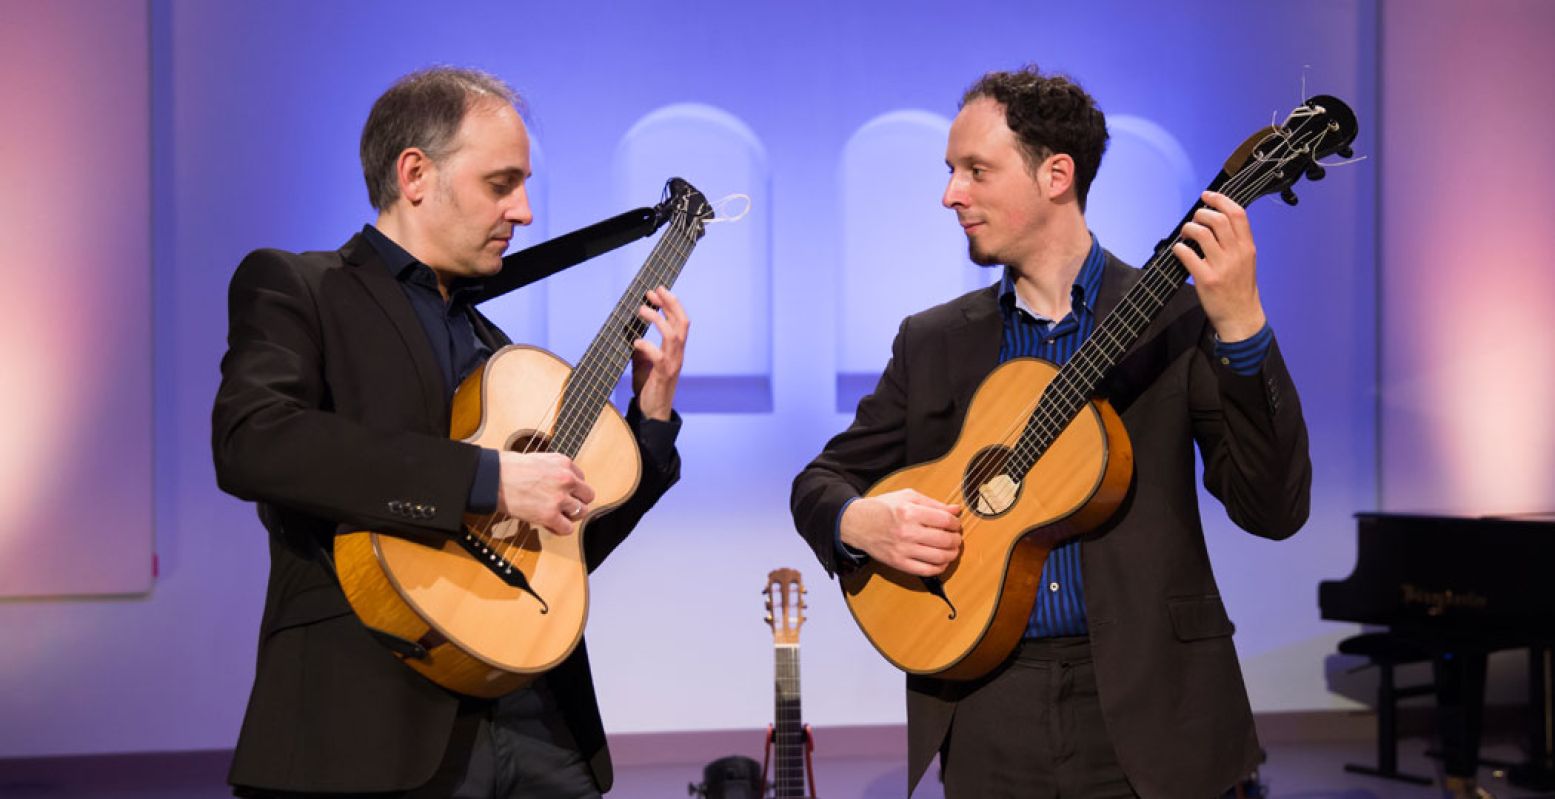 Gitaarduo Izhar Elias en Fernando Cordas speelt op zaterdag 29 mei een concert rondom Concierto de Aranjuez van Joaquin Rodrigo. Foto: Jaqueline Imminkhuizen